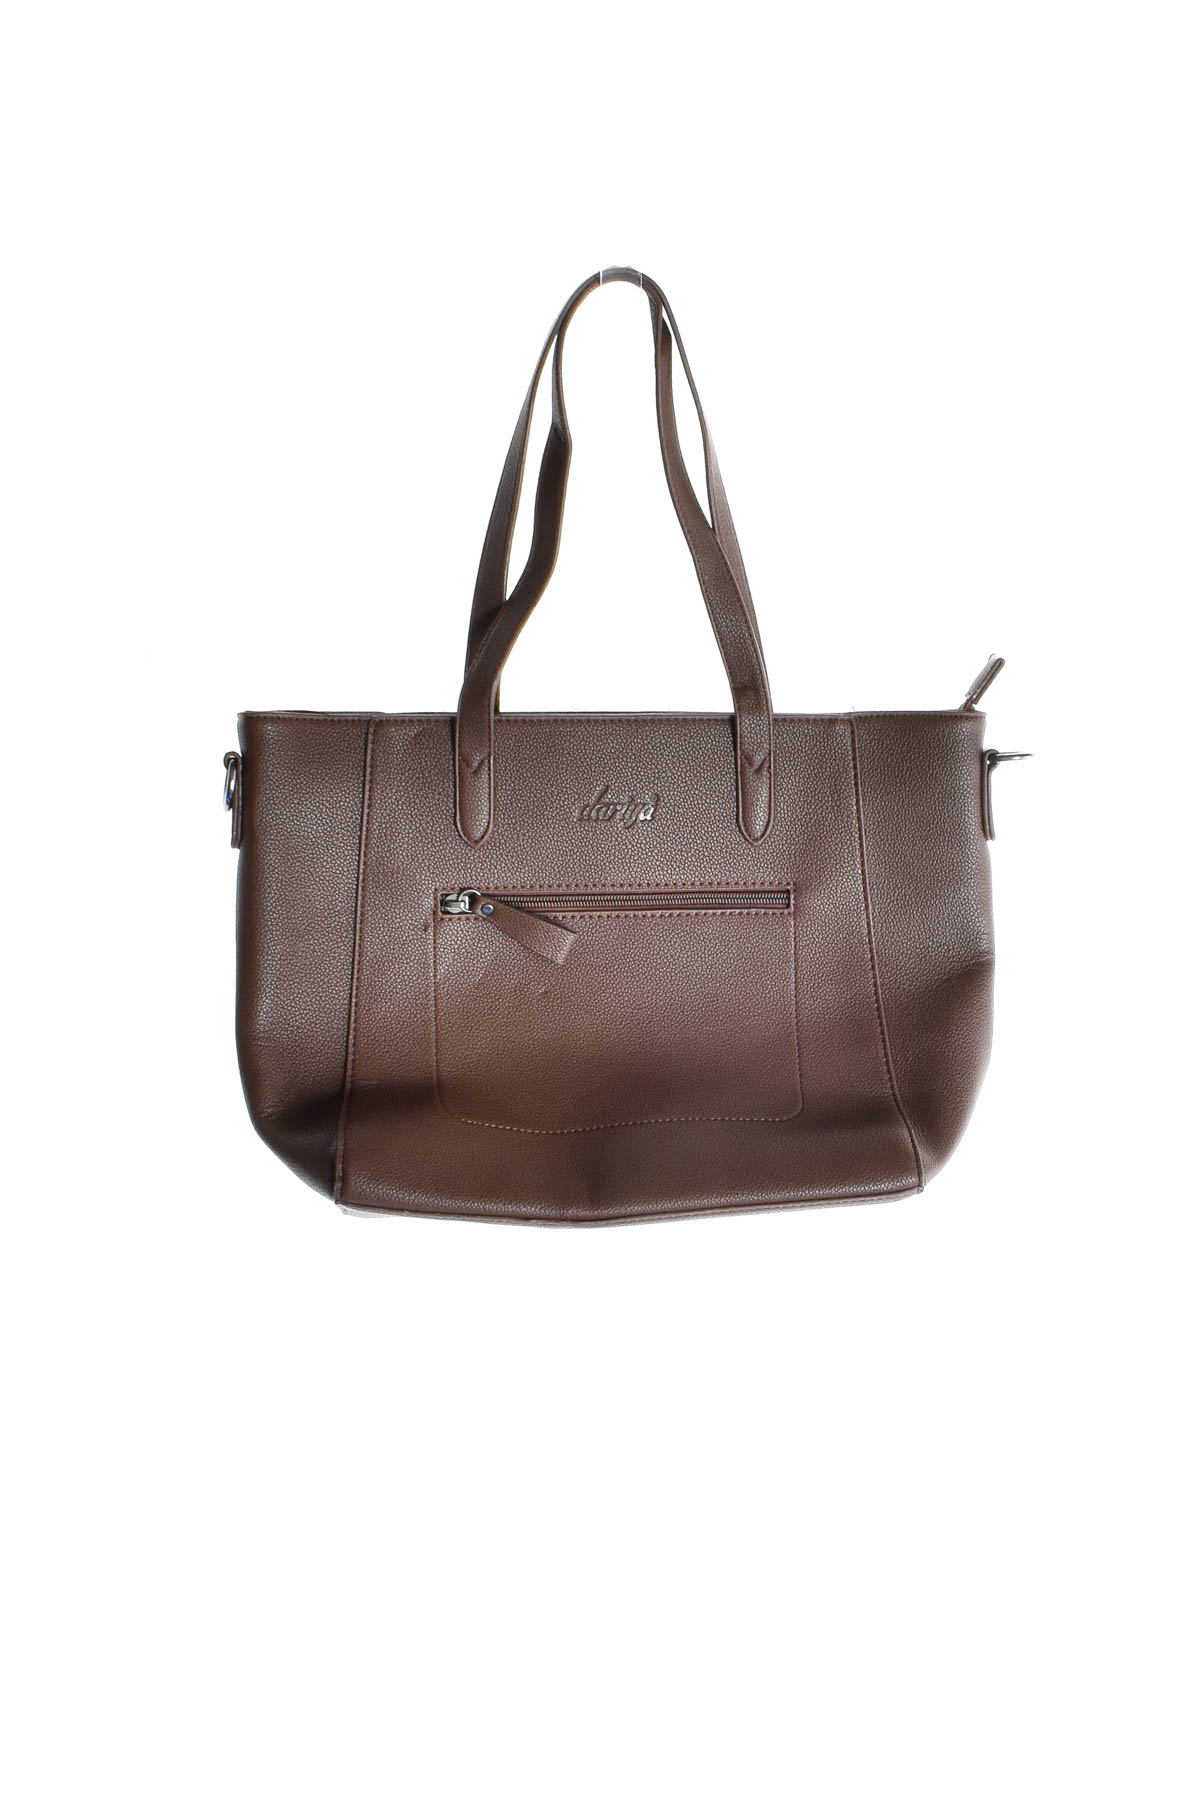 Women's bag - Dariya - 0